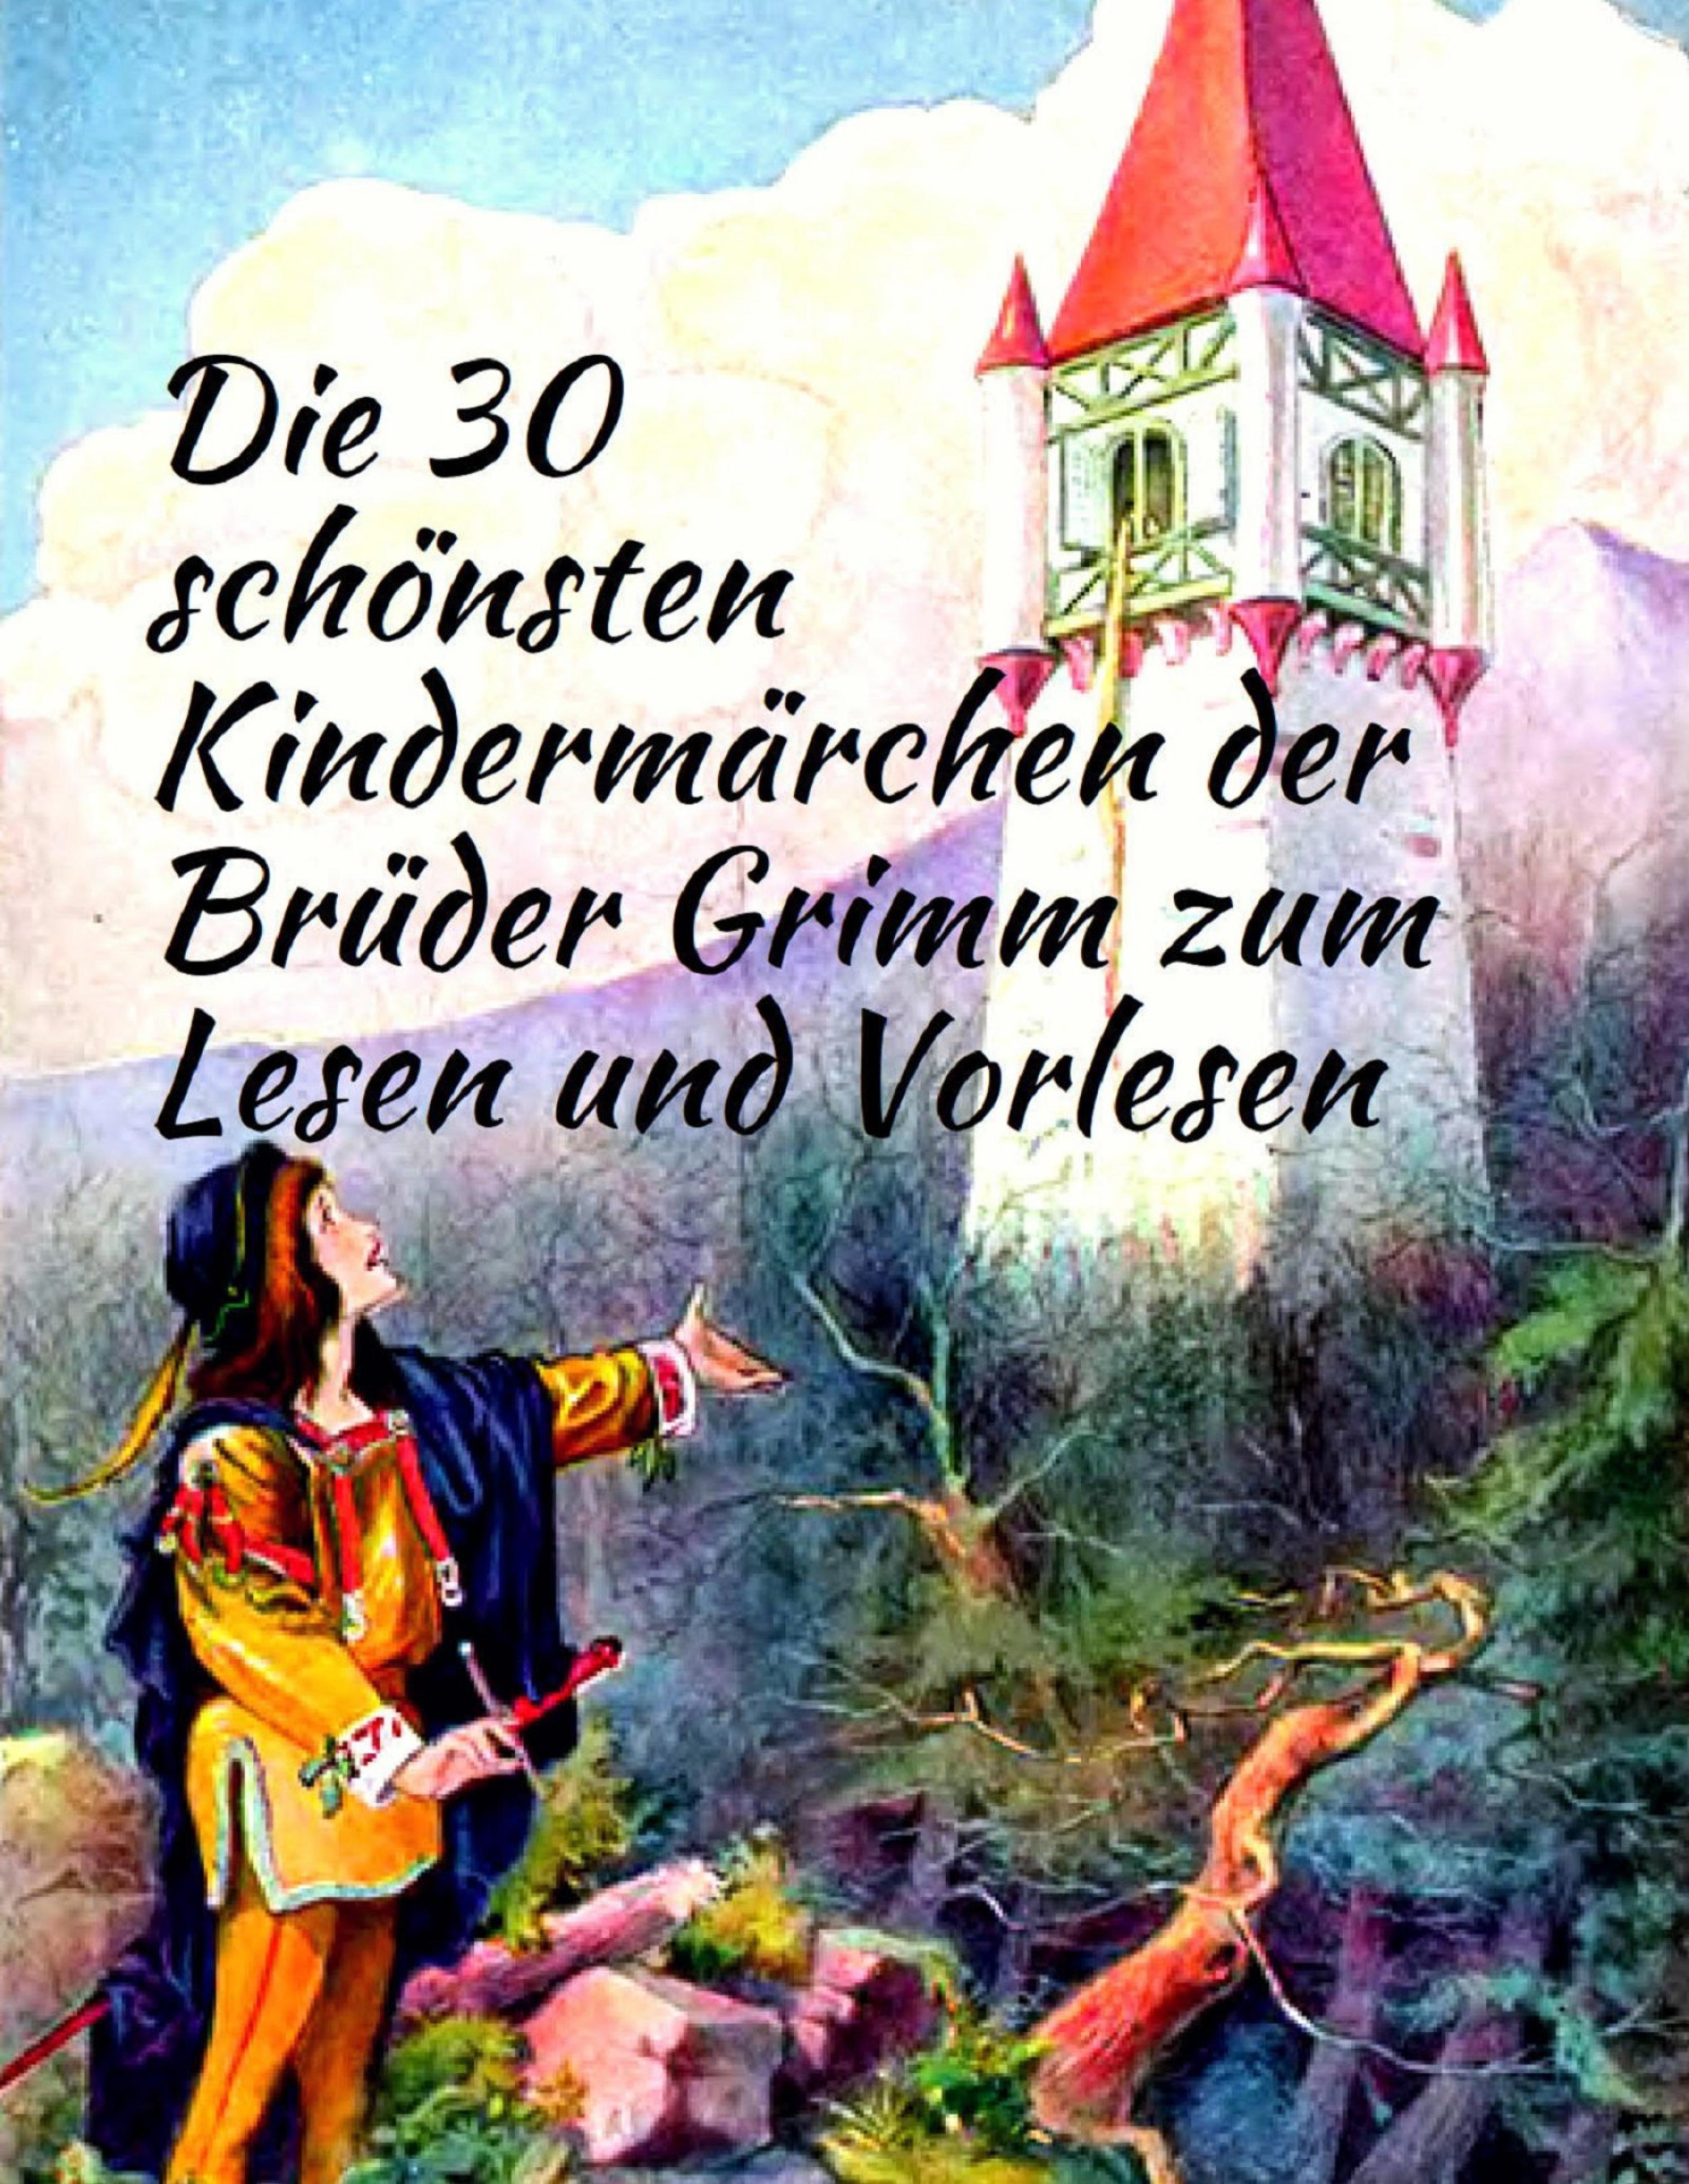 Märchenbuch Die 30 schönsten Kindermärchen der Brüder Grimm zum Lesen und Vorlesen: Märchenklassiker für Kinder mit vielen Illustrationen